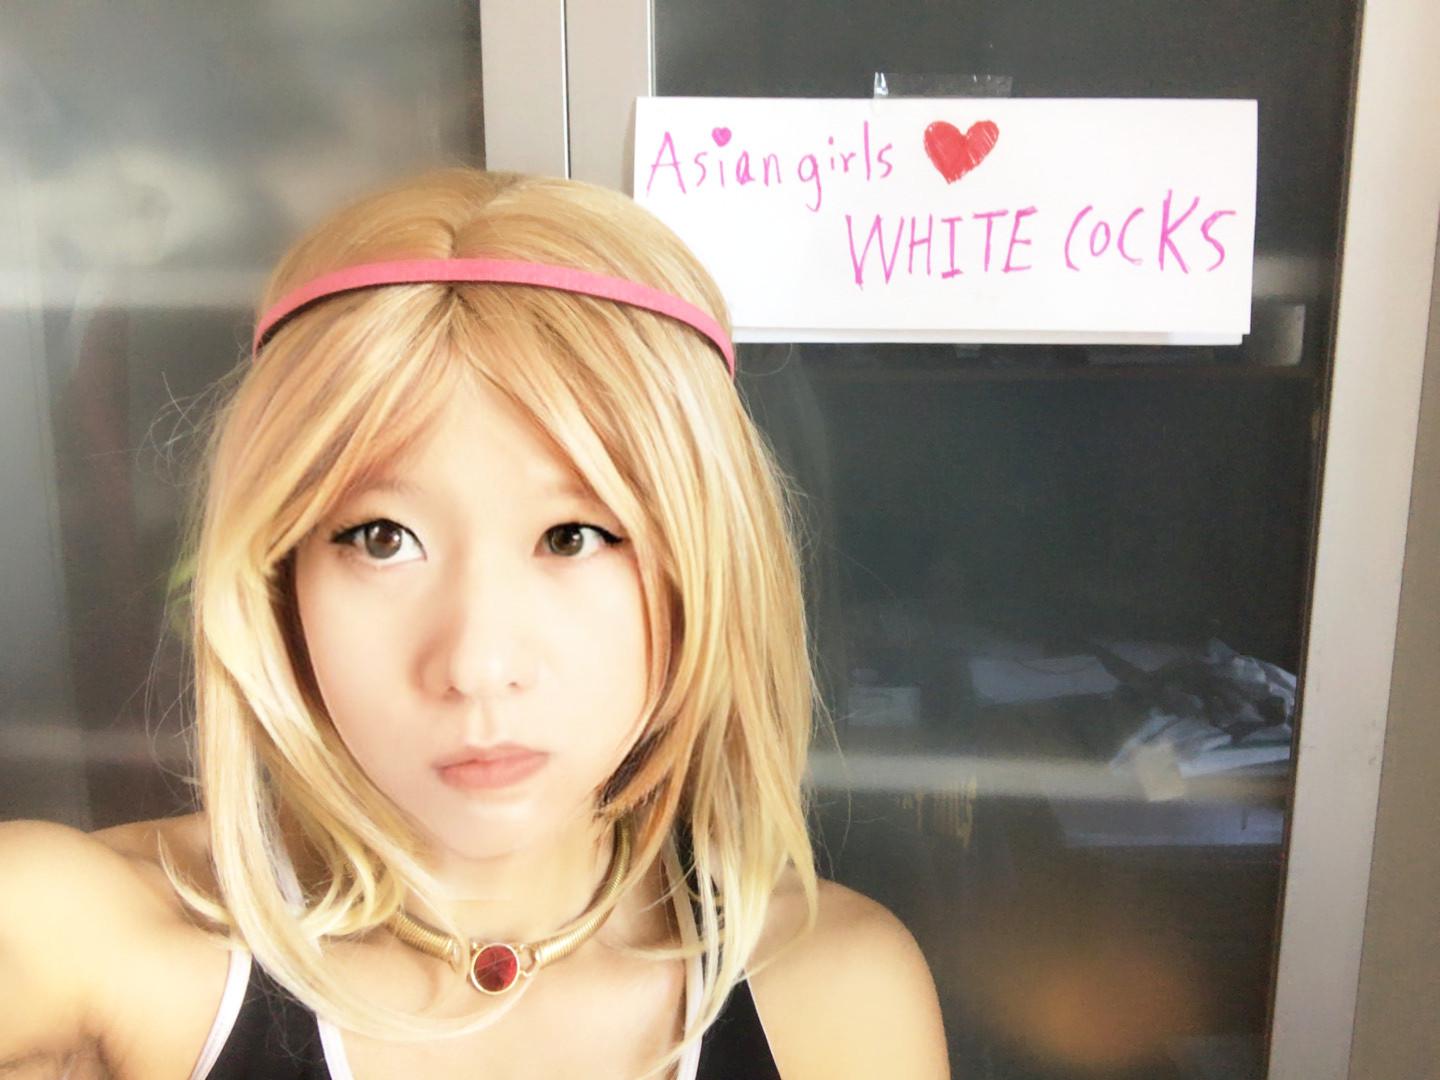 Asian Girls White Cocks Scrolller